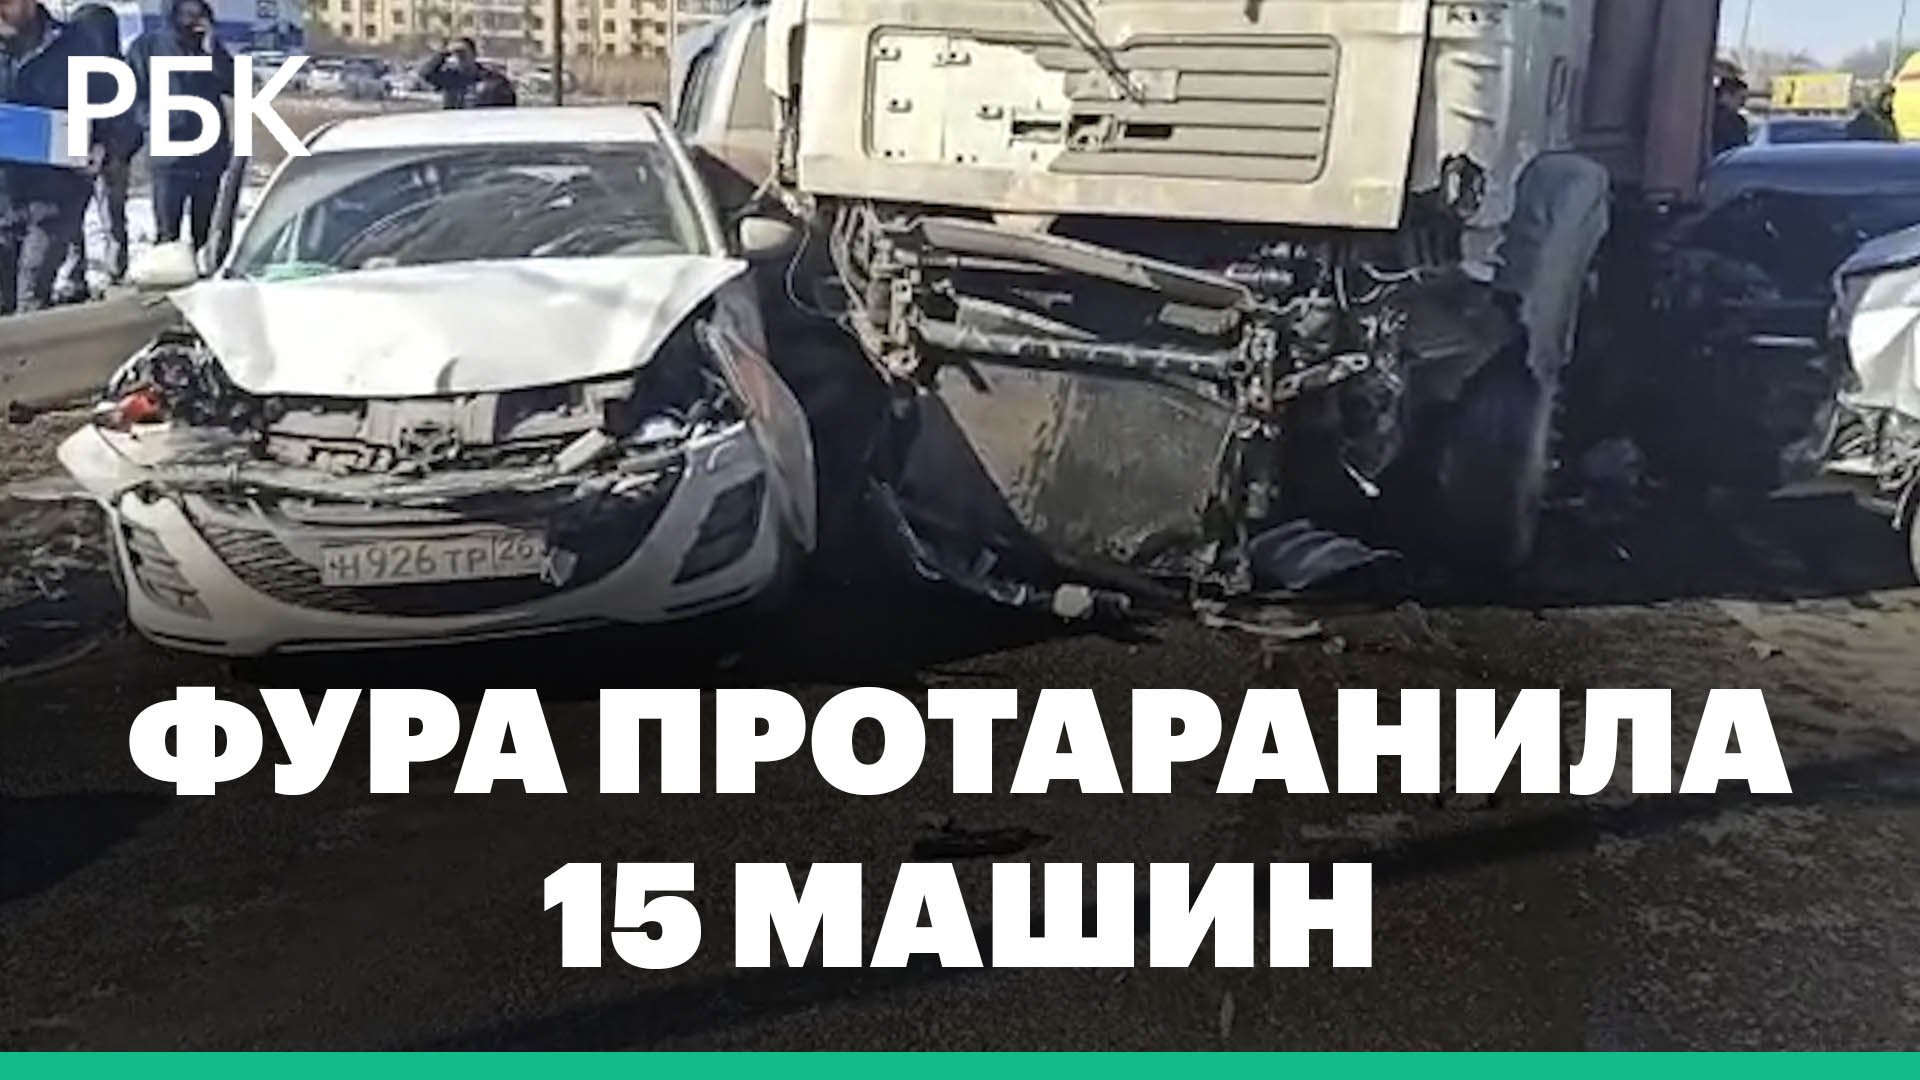 Фура протаранила 15 машин на трассе в Ставропольском крае